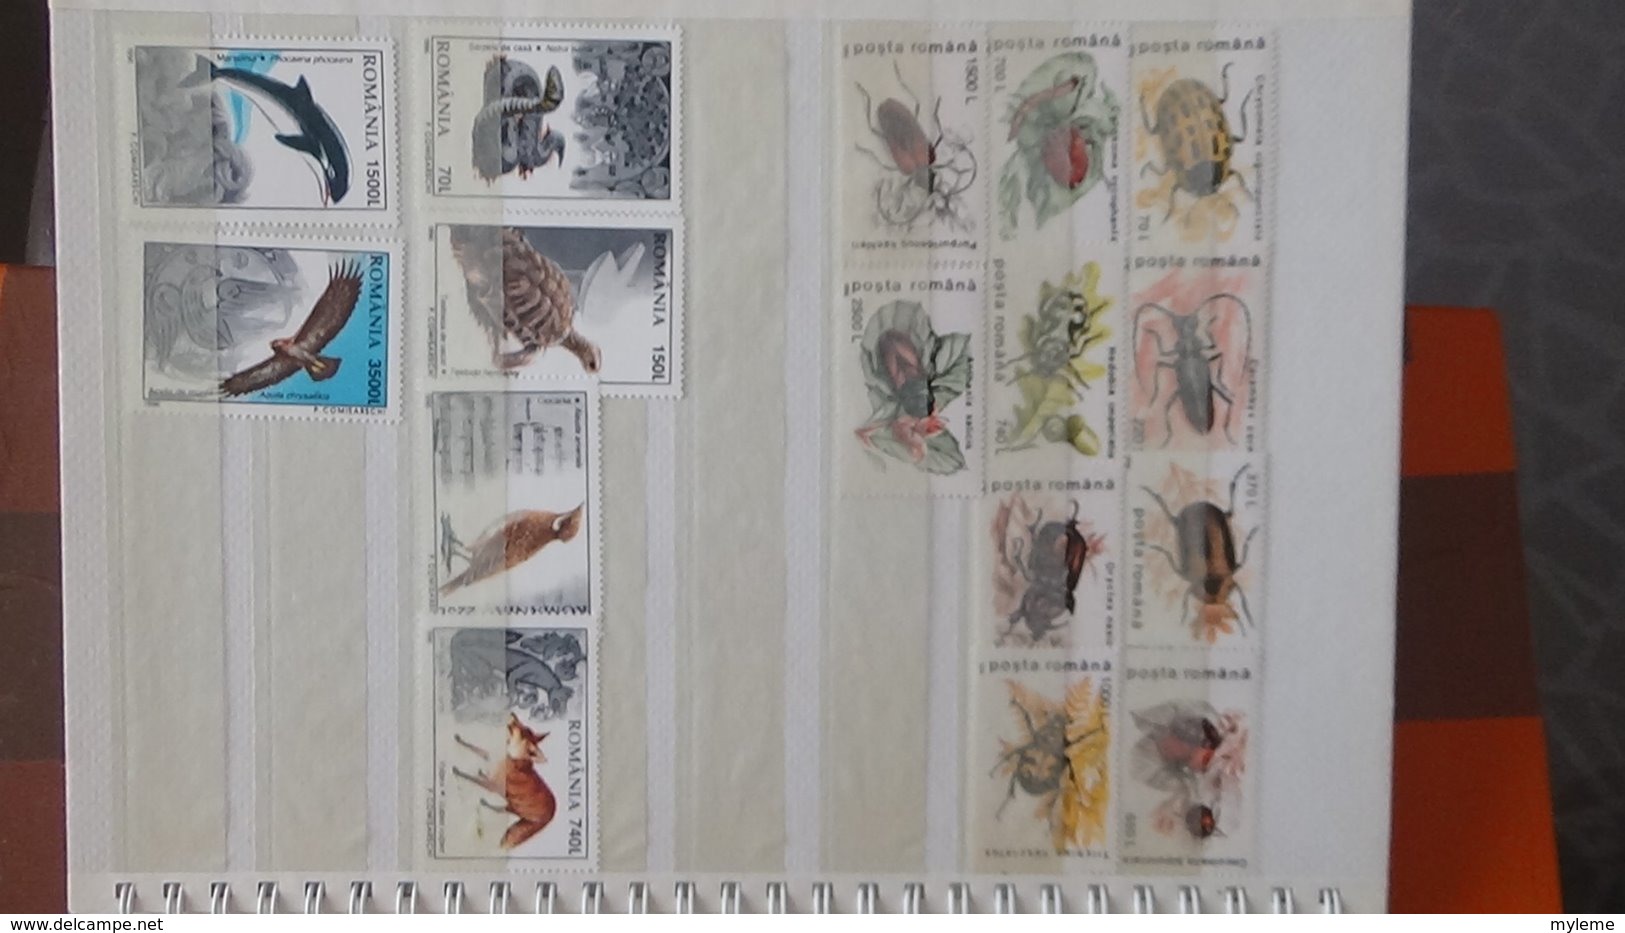 Petite collection de ROUMANIE entre 1994 et 1996 en timbres et blocs ** . A saisir !!!